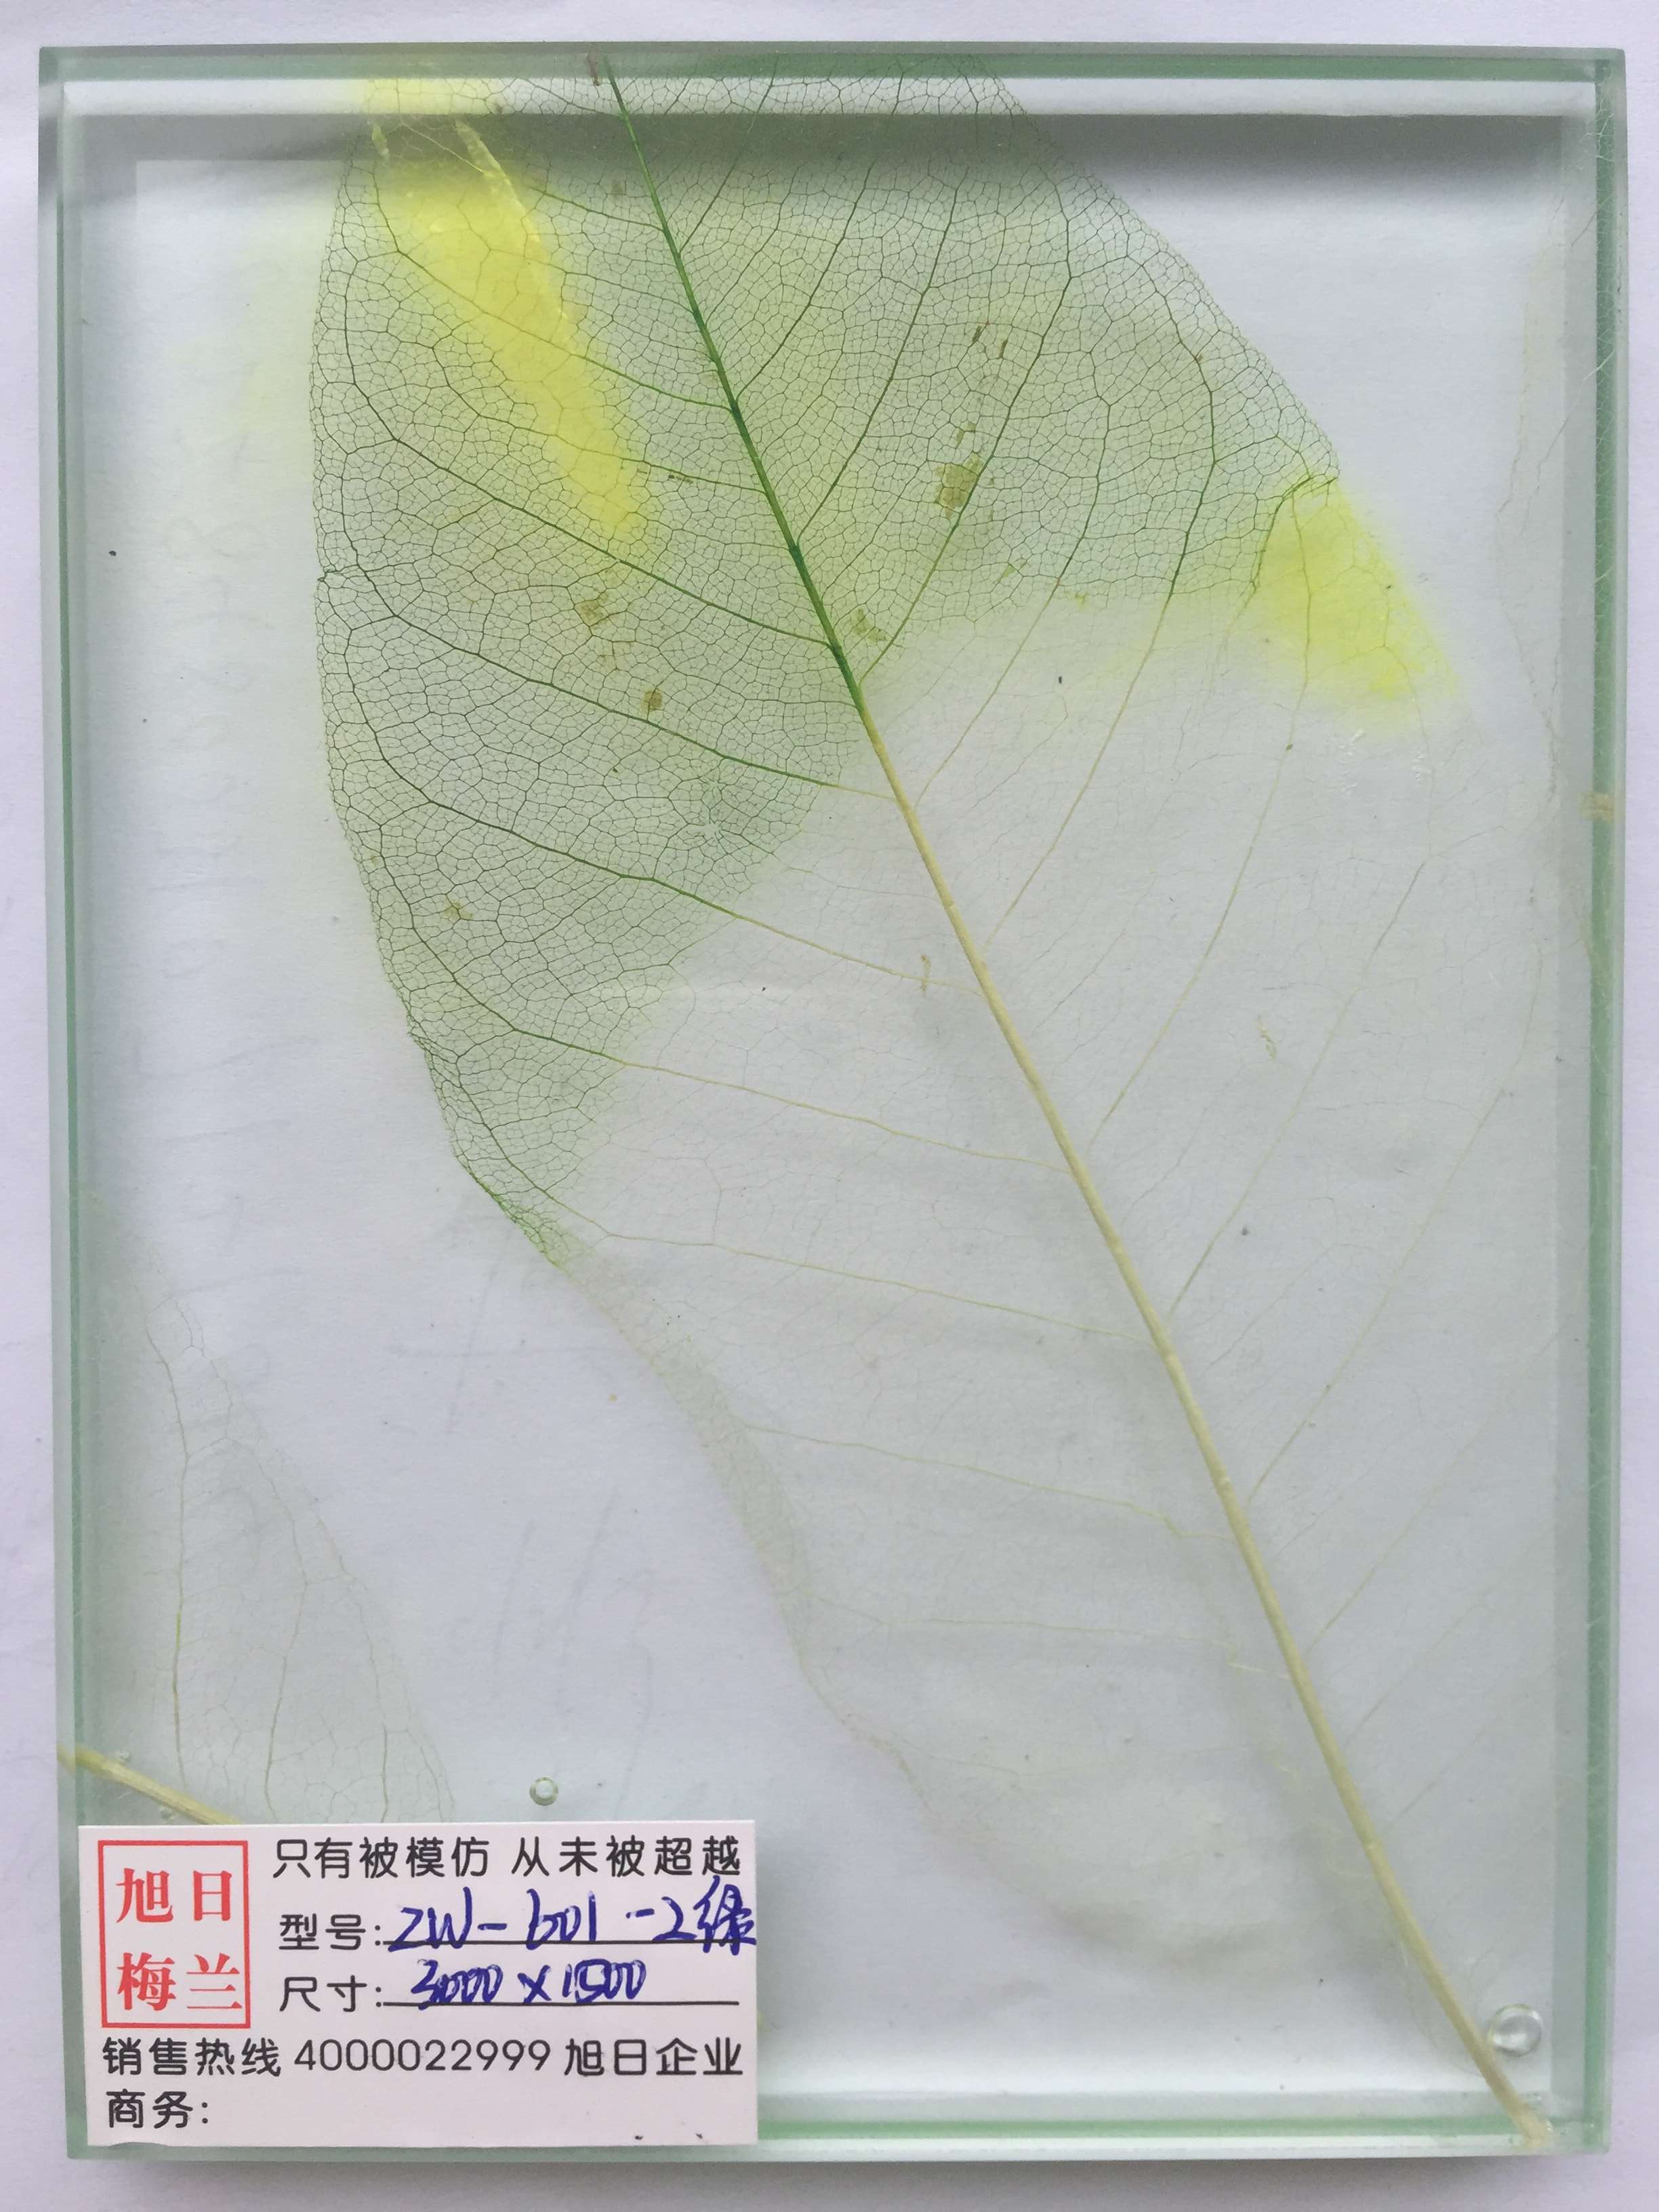 植物夹胶玻璃zw-601湿法夹胶玻璃旭日梅兰装饰玻璃新产品